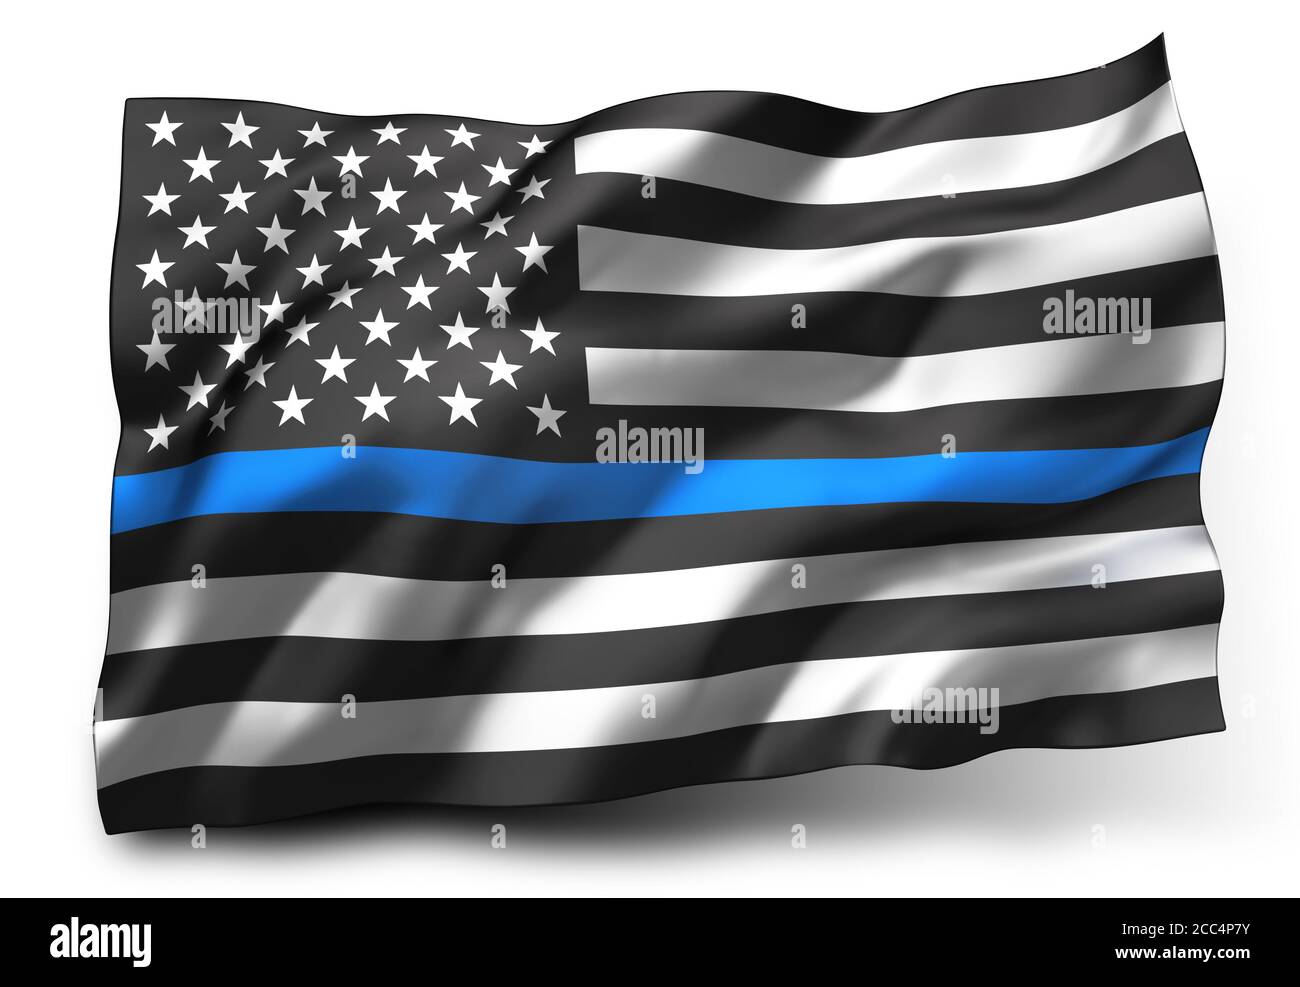 Bandiera nera della materia delle vite, con una striscia di bue, che soffia nel vento. Bandiera a strisce bianche e nere degli Stati Uniti, isolata su sfondo bianco. Illustrazione 3D Foto Stock